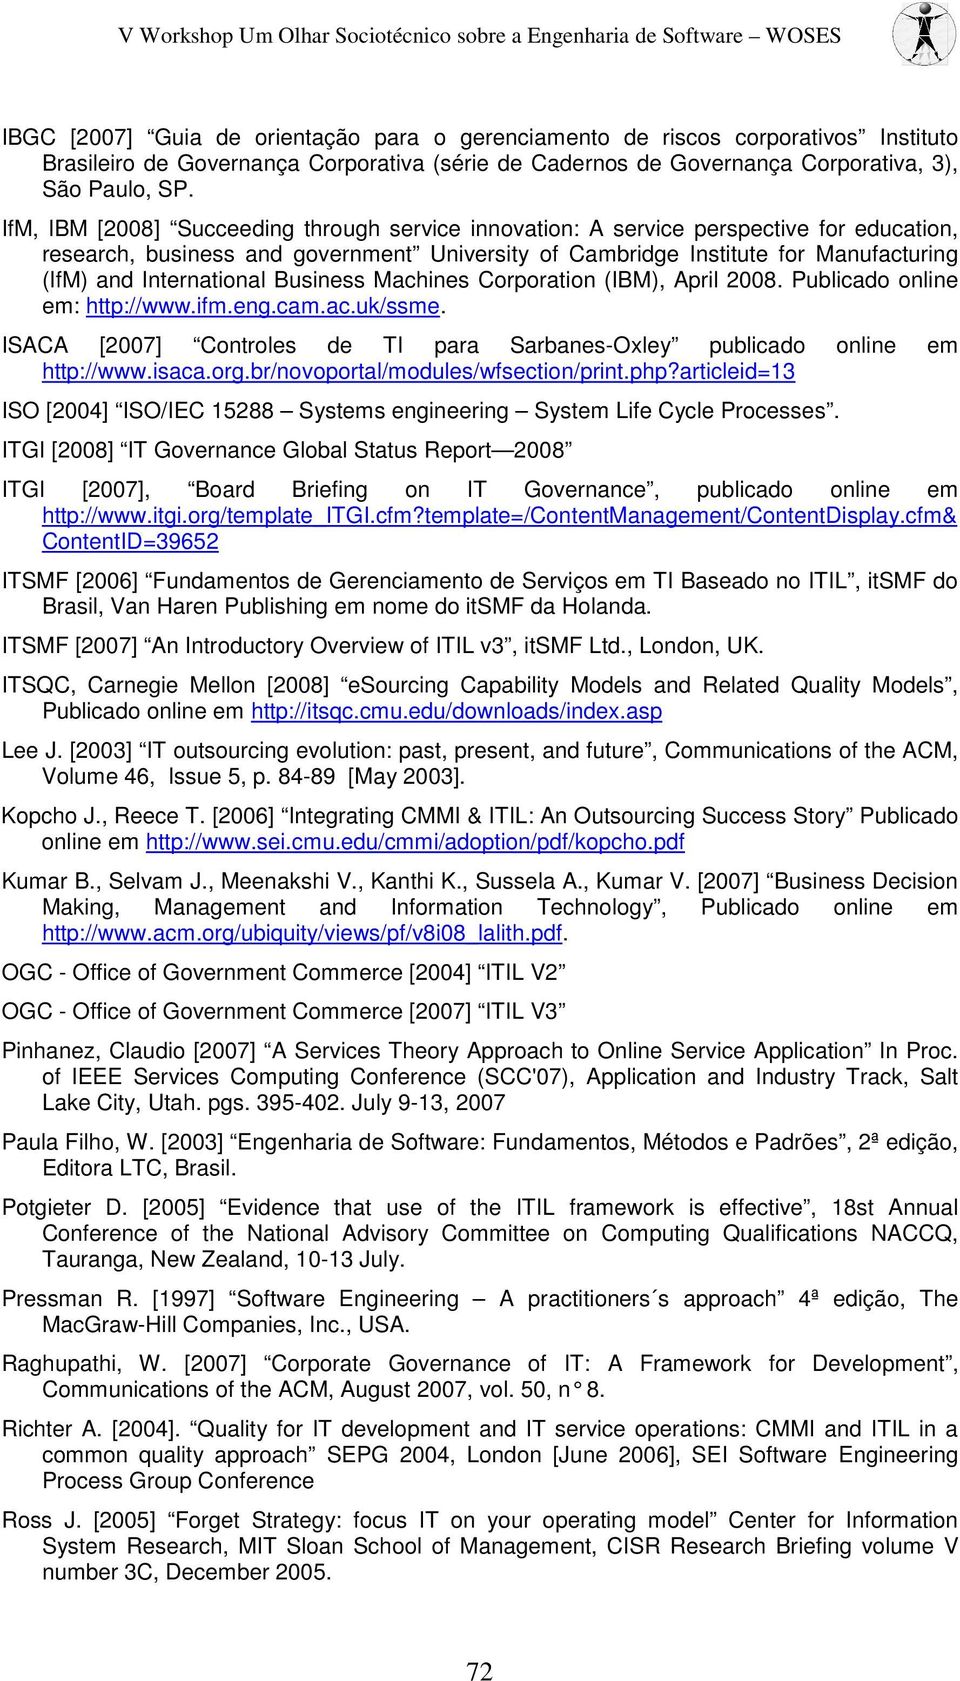 International Business Machines Corporation (IBM), April 2008. Publicado online em: http://www.ifm.eng.cam.ac.uk/ssme. ISACA [2007] Controles de TI para Sarbanes-Oxley publicado online em http://www.